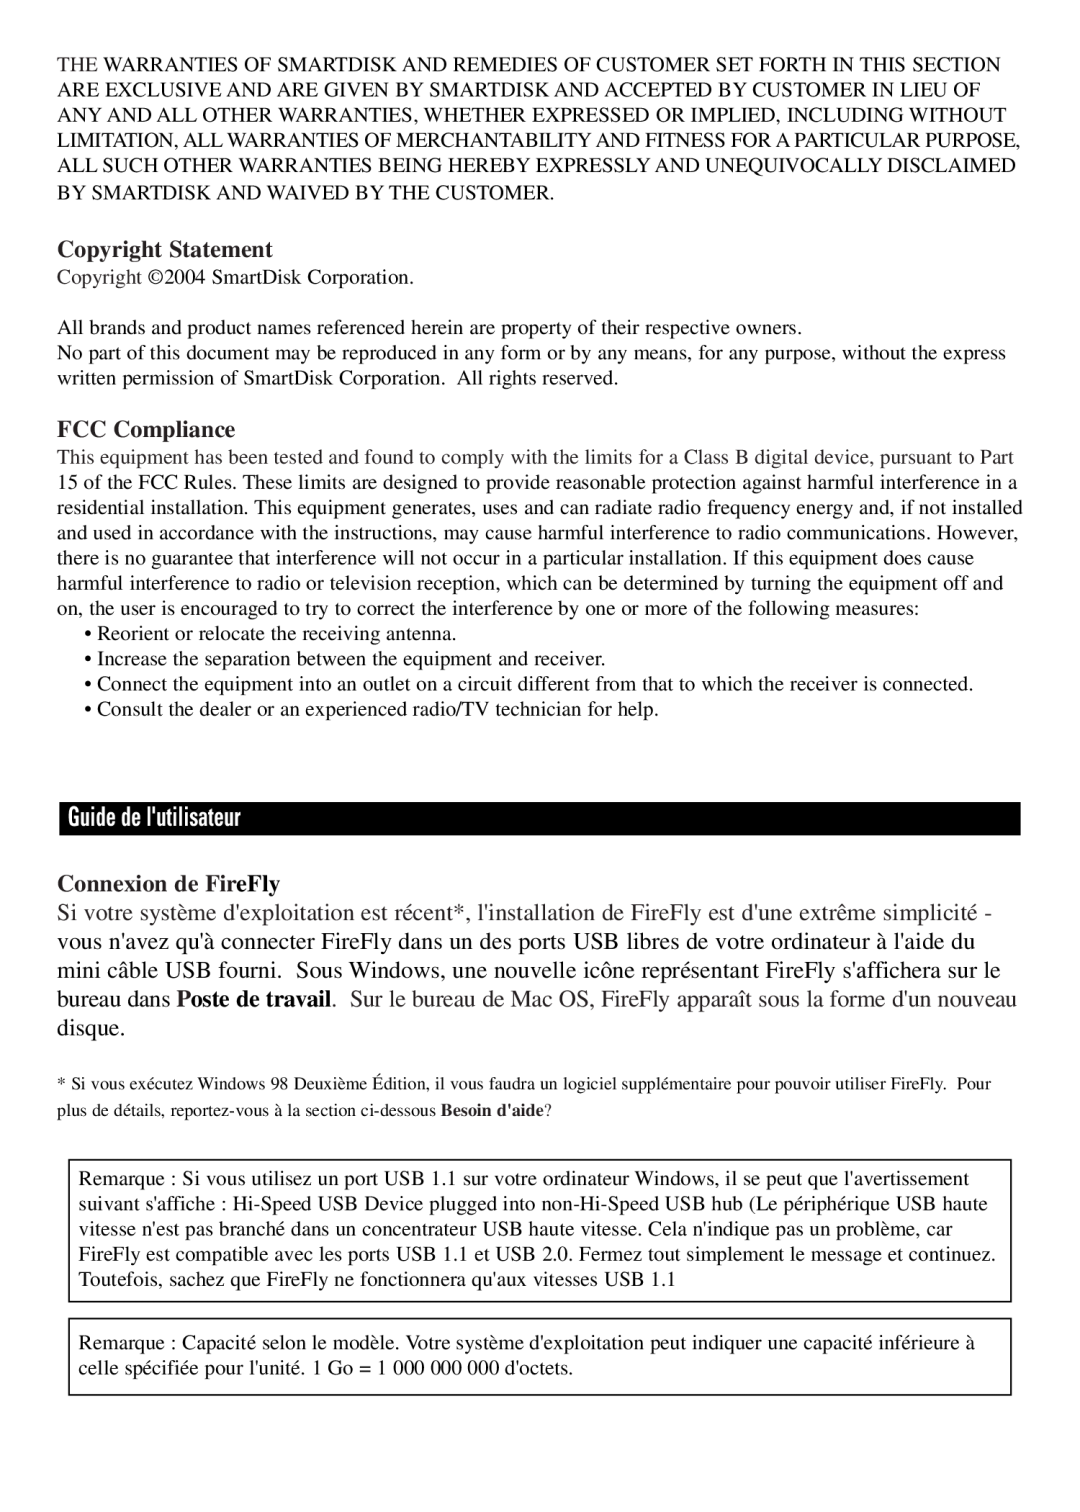 SmartDisk Computer Hard Drive manual Guide de lutilisateur, Copyright Statement, FCC Compliance, Connexion de FireFly 